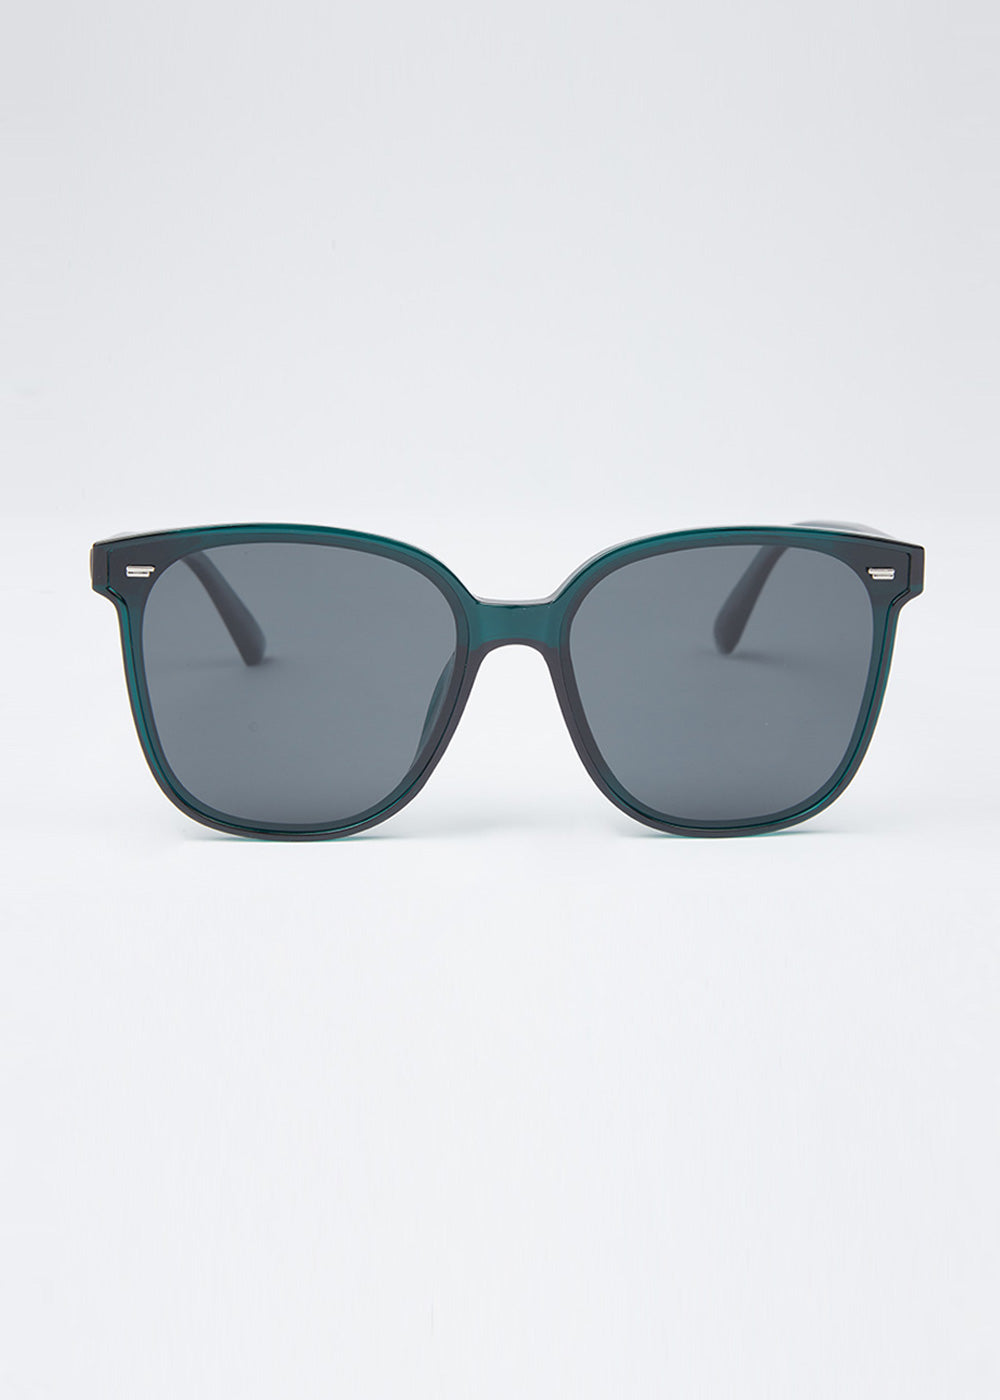 Turquoise Green Unisex Square Sunglasses